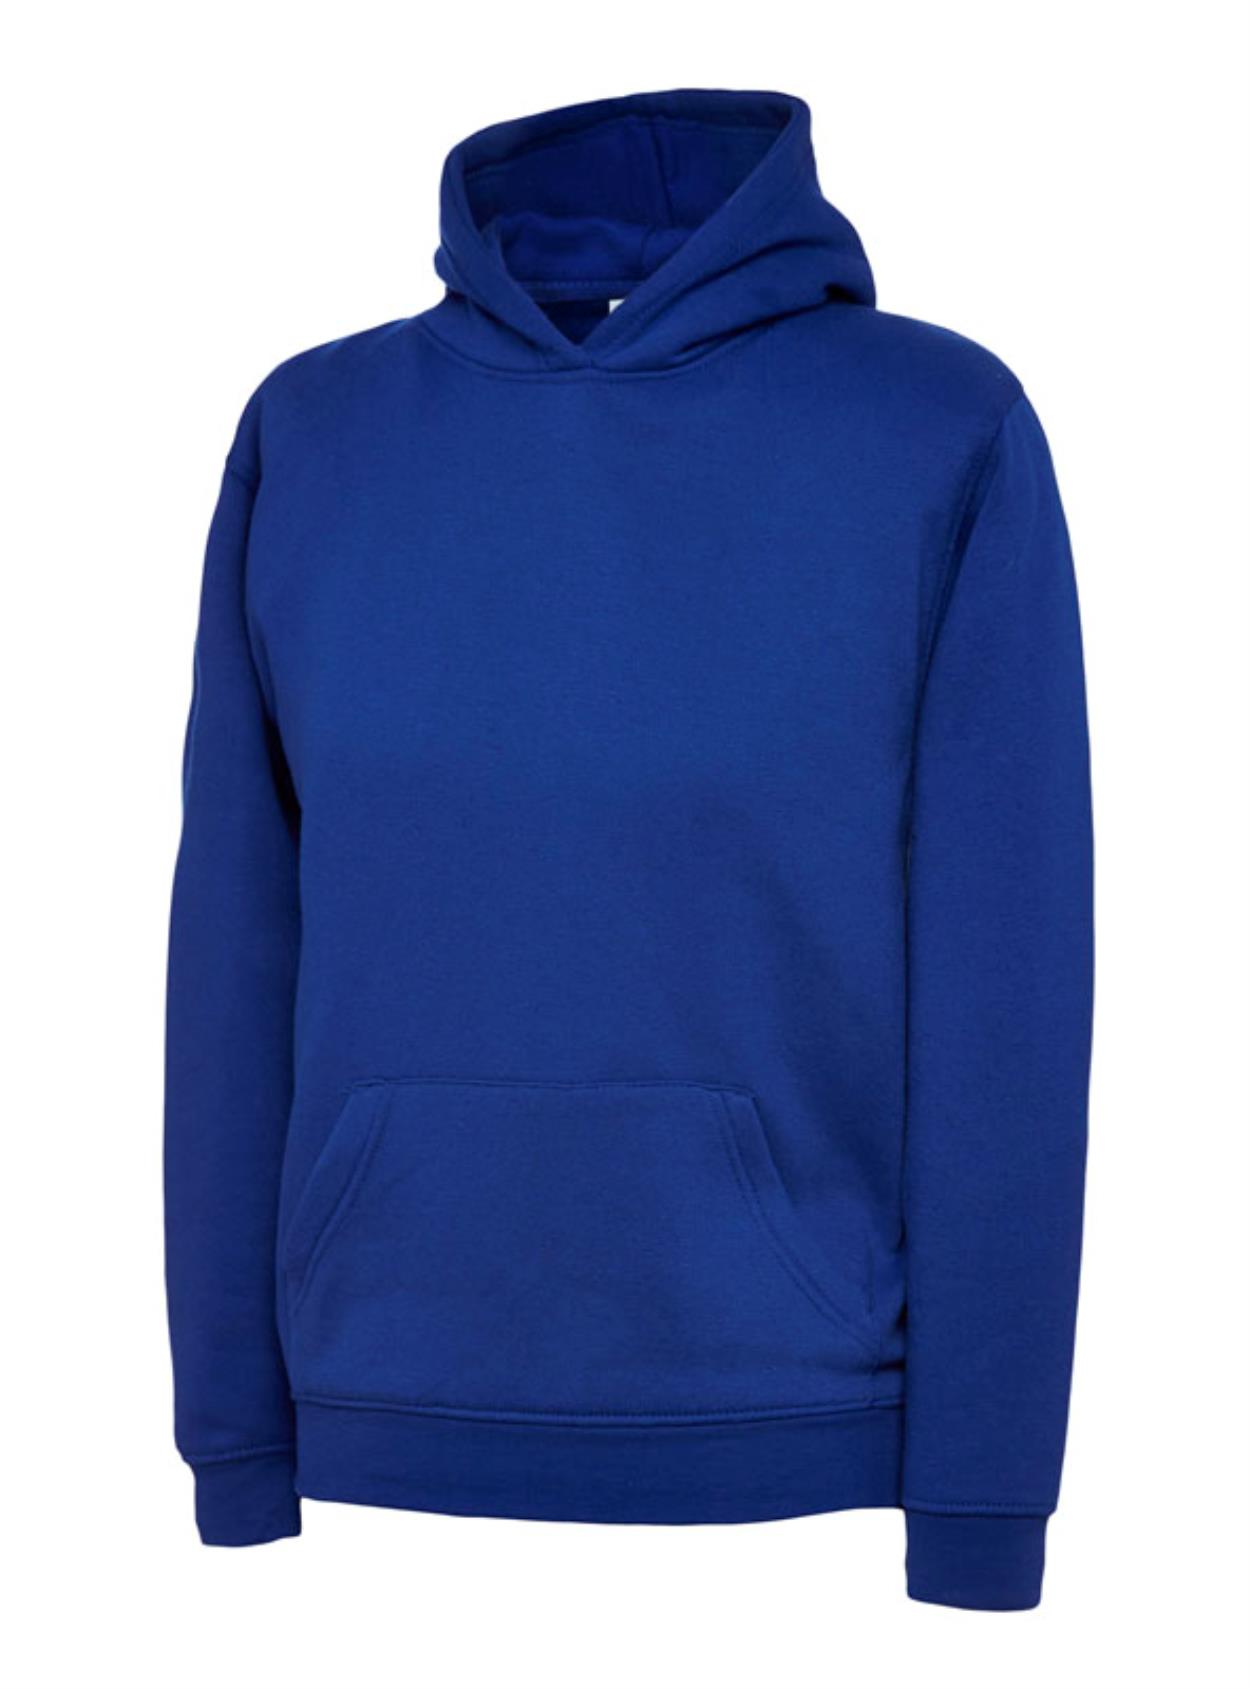 UX8 Children’s Hooded Sweatshirt Image 1